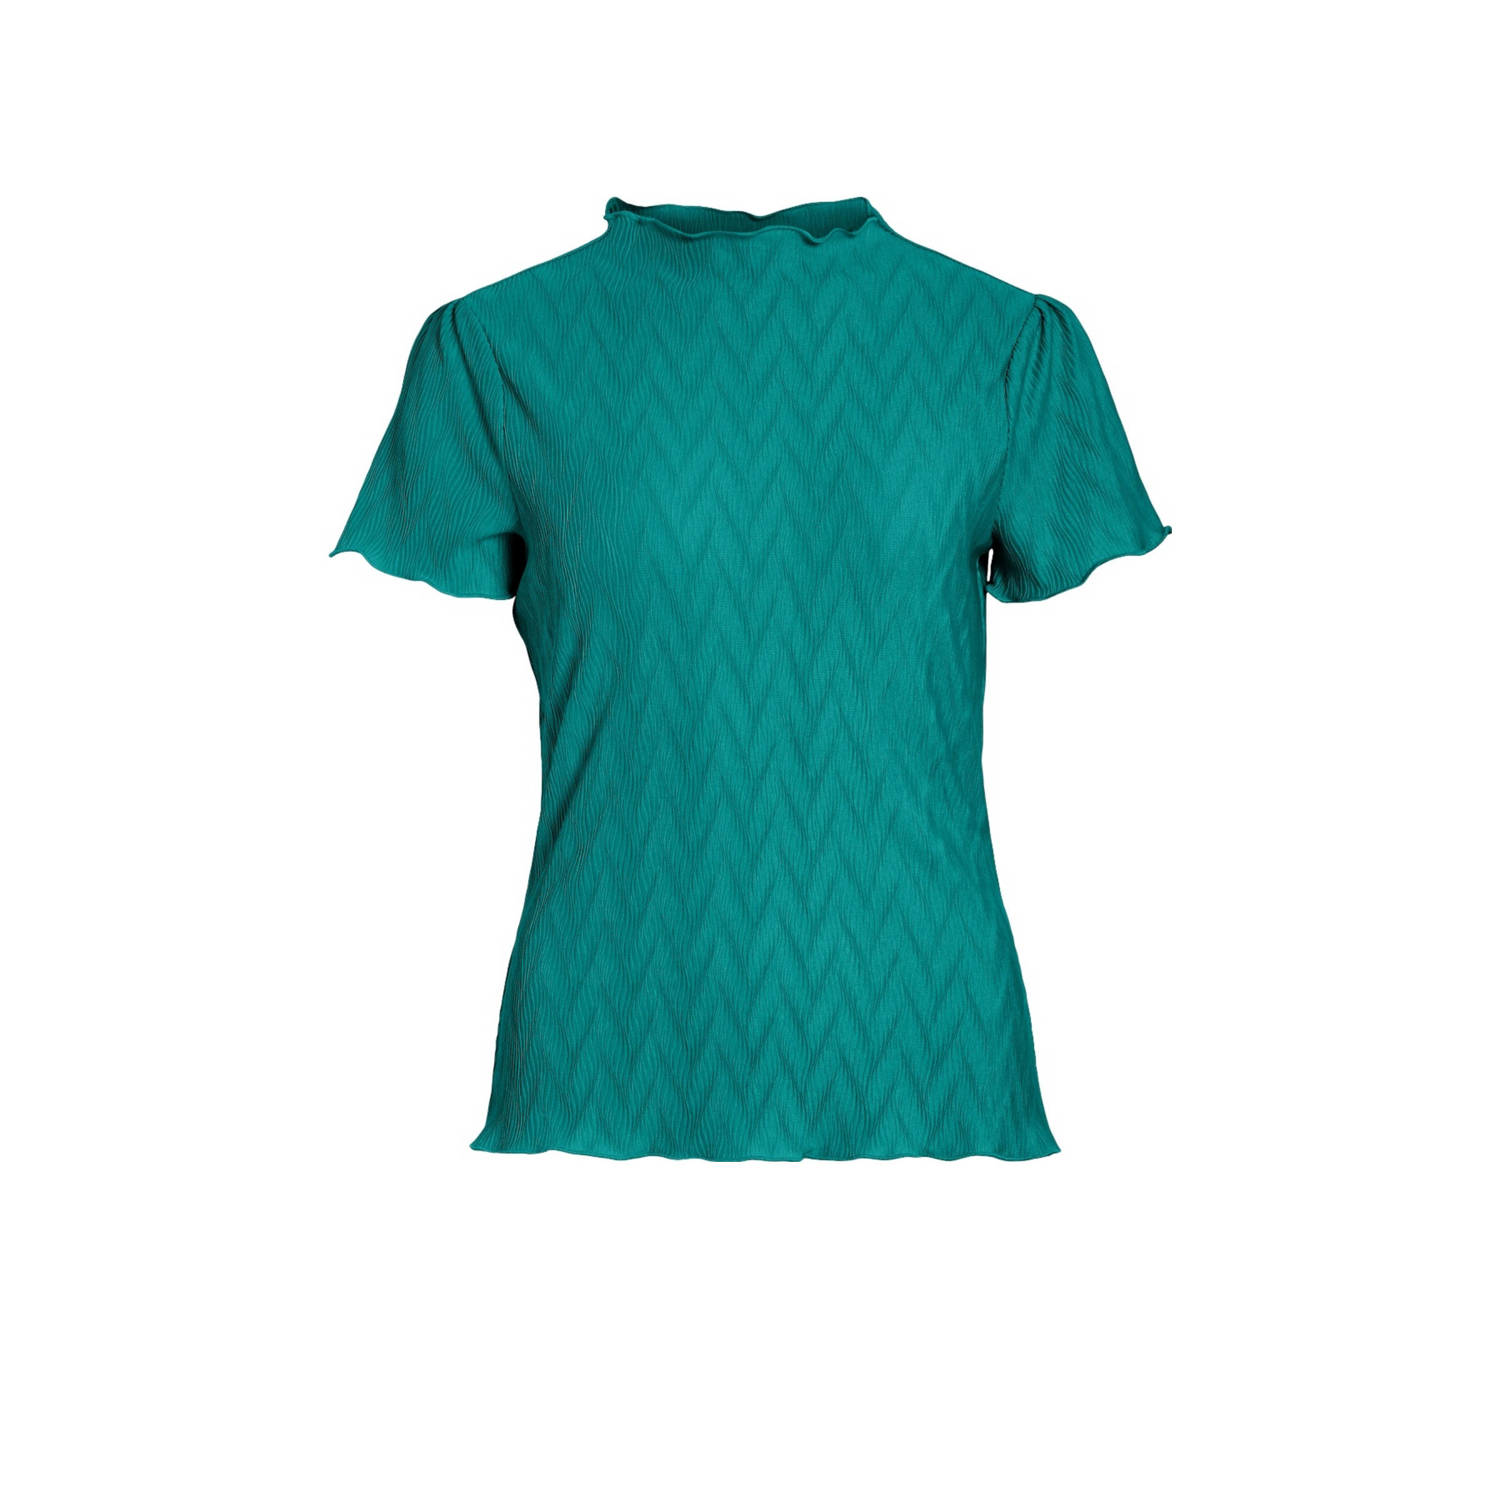 VILA T-shirt VIPLISEA turquoise